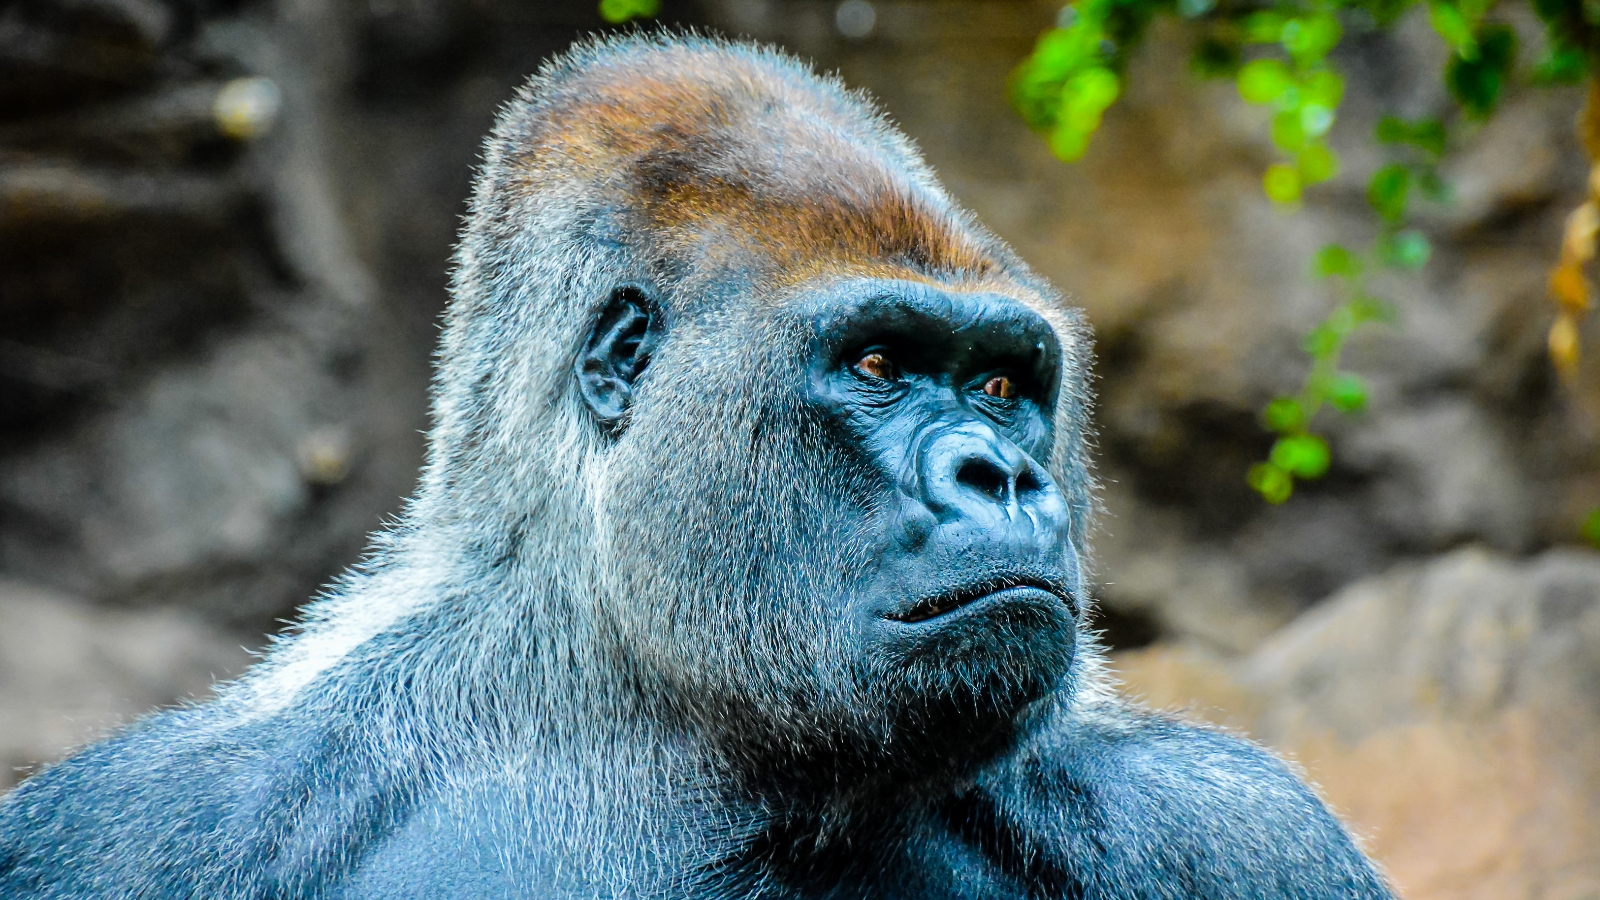 male silverback gorilla at the zoo